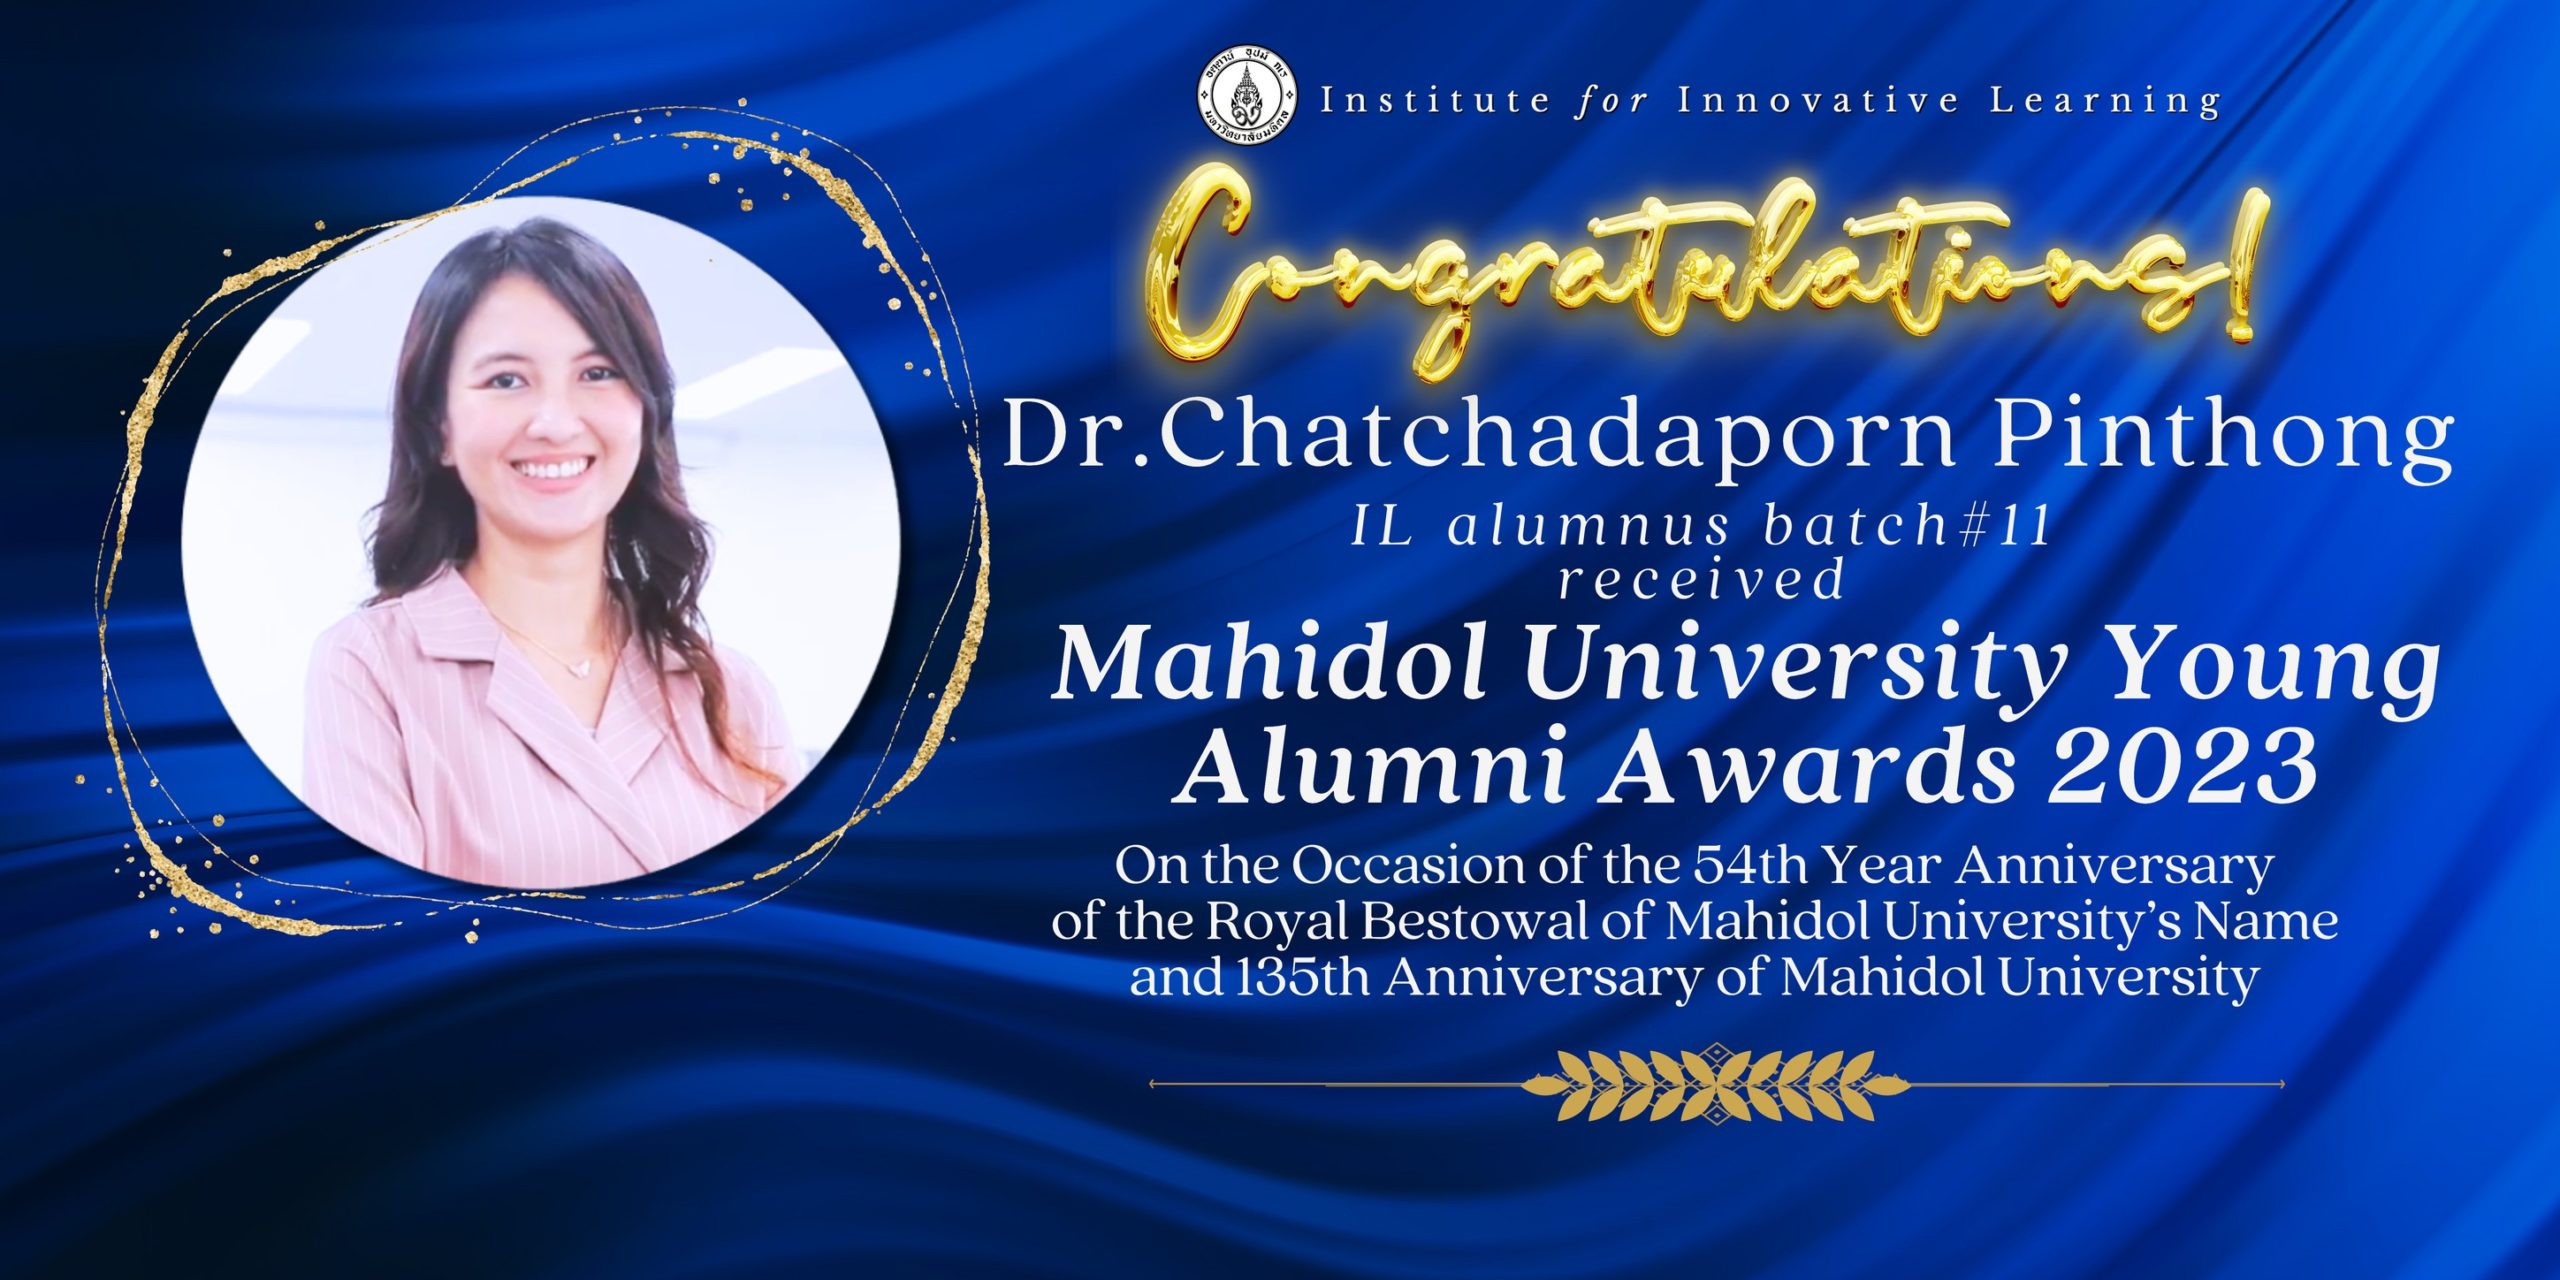 Congratulations to Dr.Chatchadaporn Pinthong